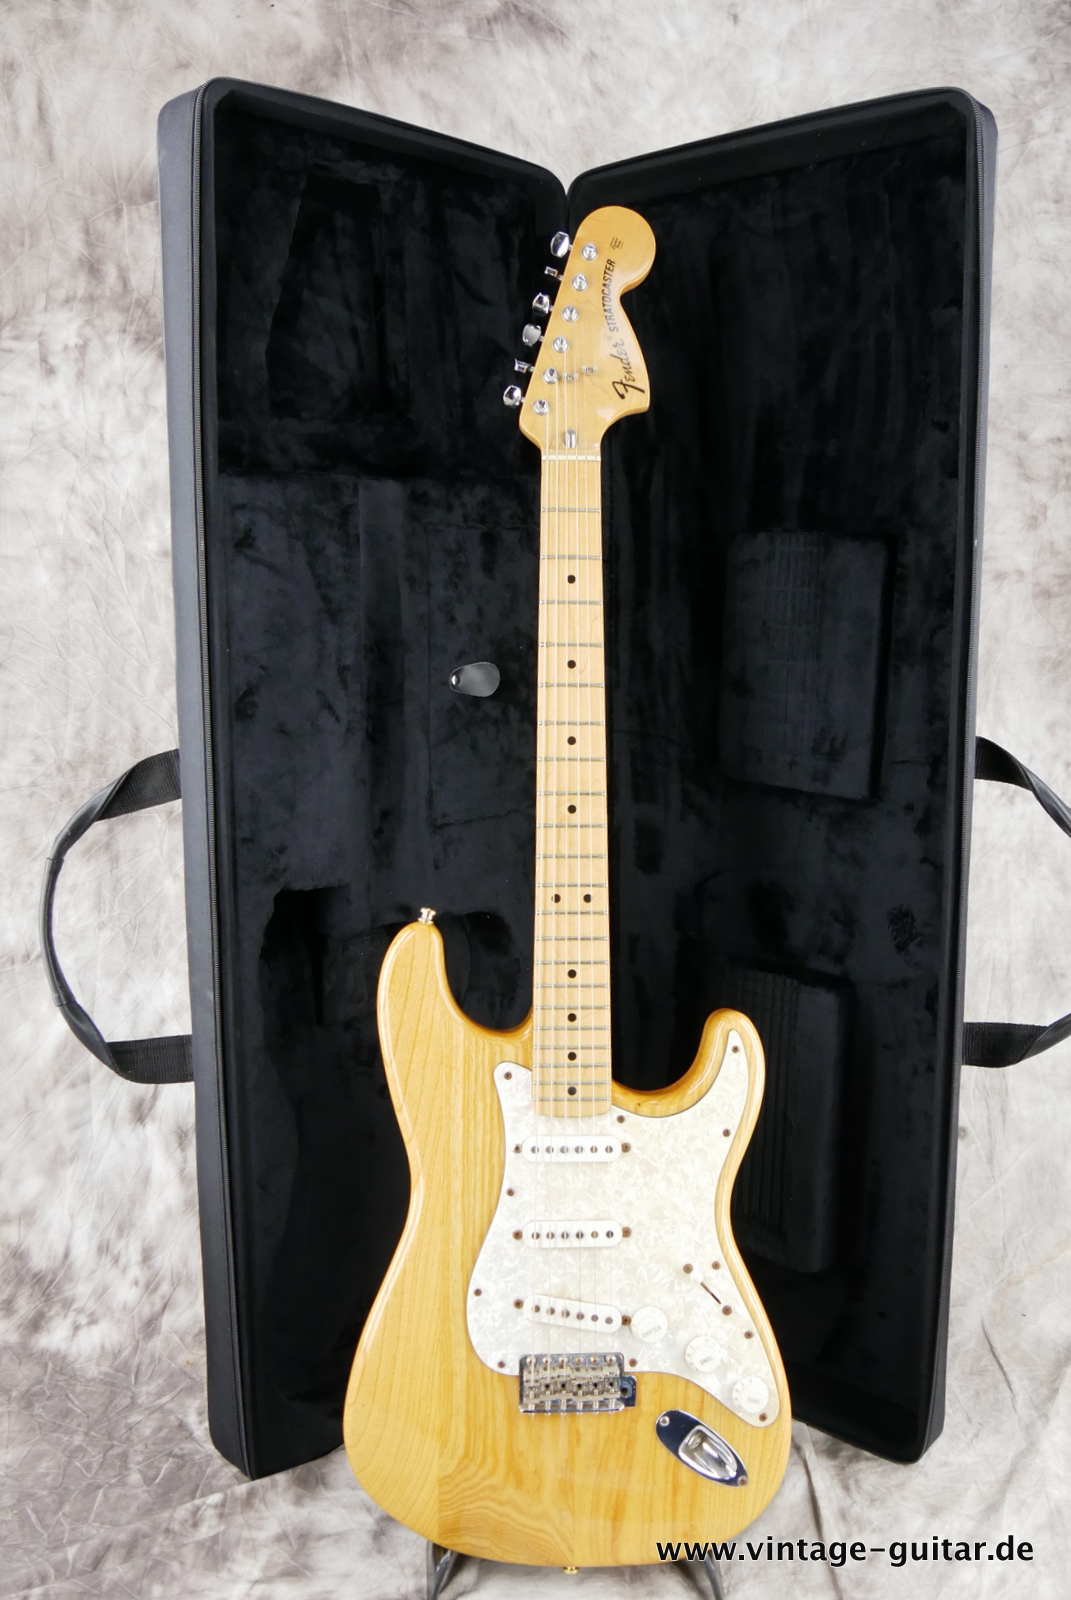 Fender_Stratocaster_70s_reissue_maple_neck_1999_Mexico-017.JPG